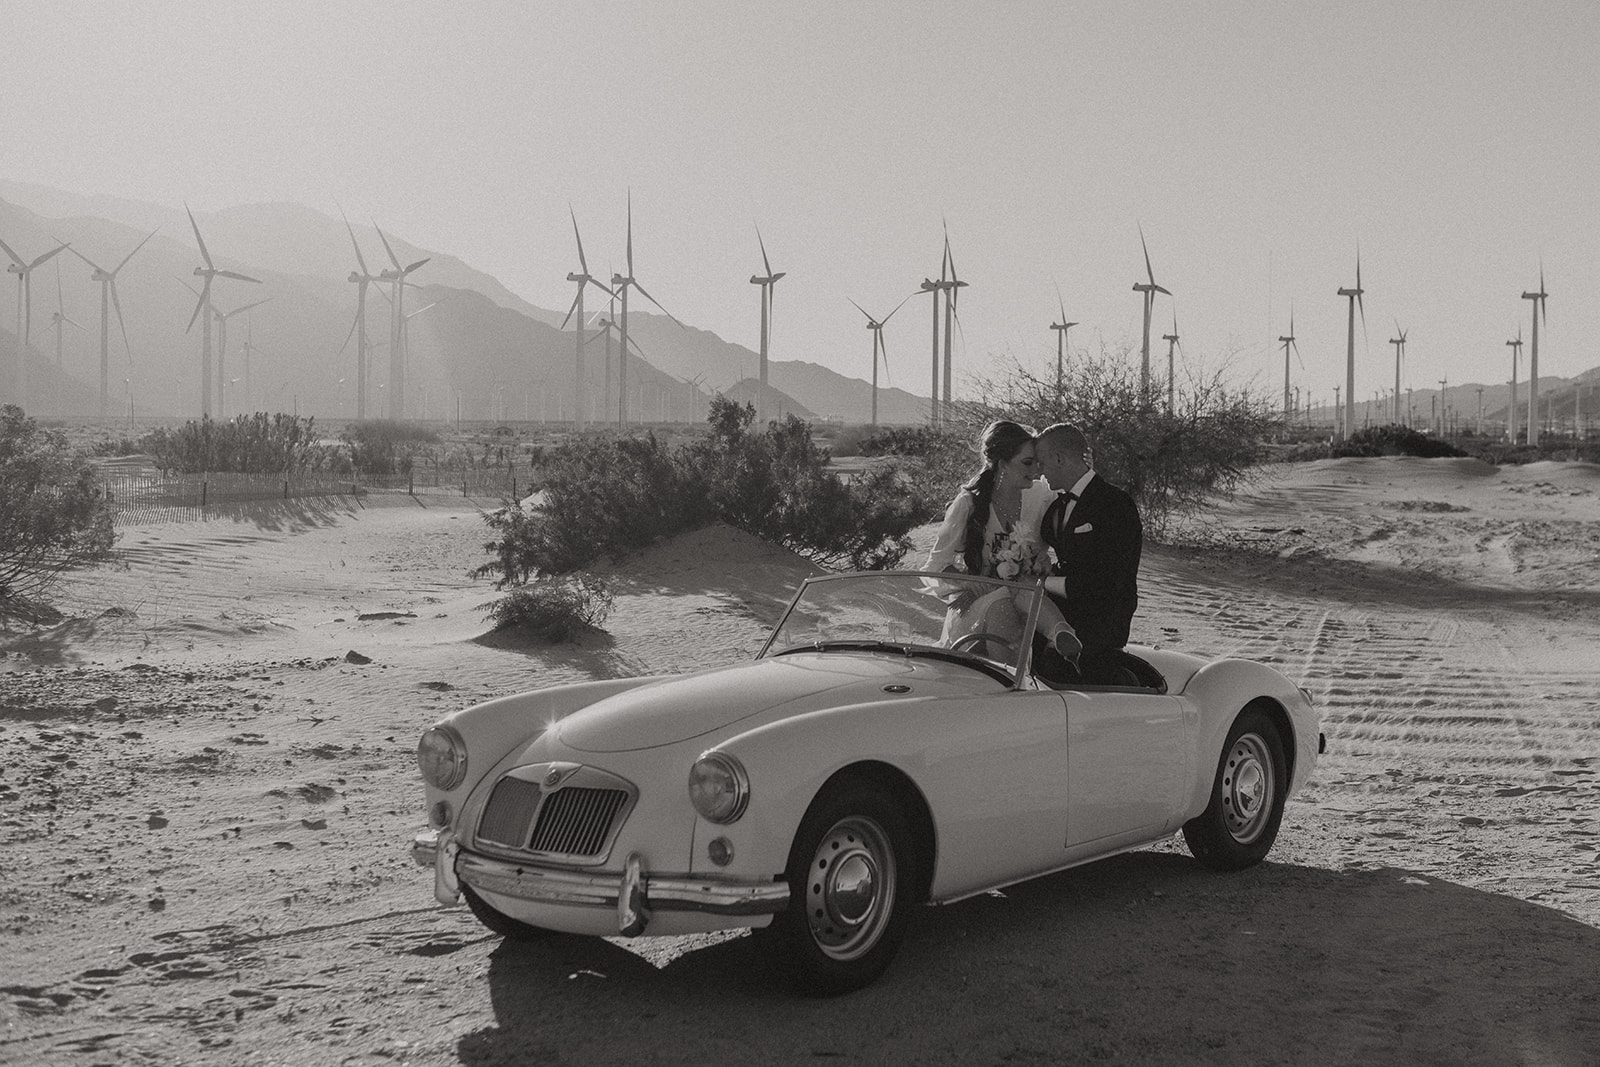 Retro Palm Springs Elopement || Ariel + Travisretro themed elopement at windmills of palm springs with couple sitting in retro car